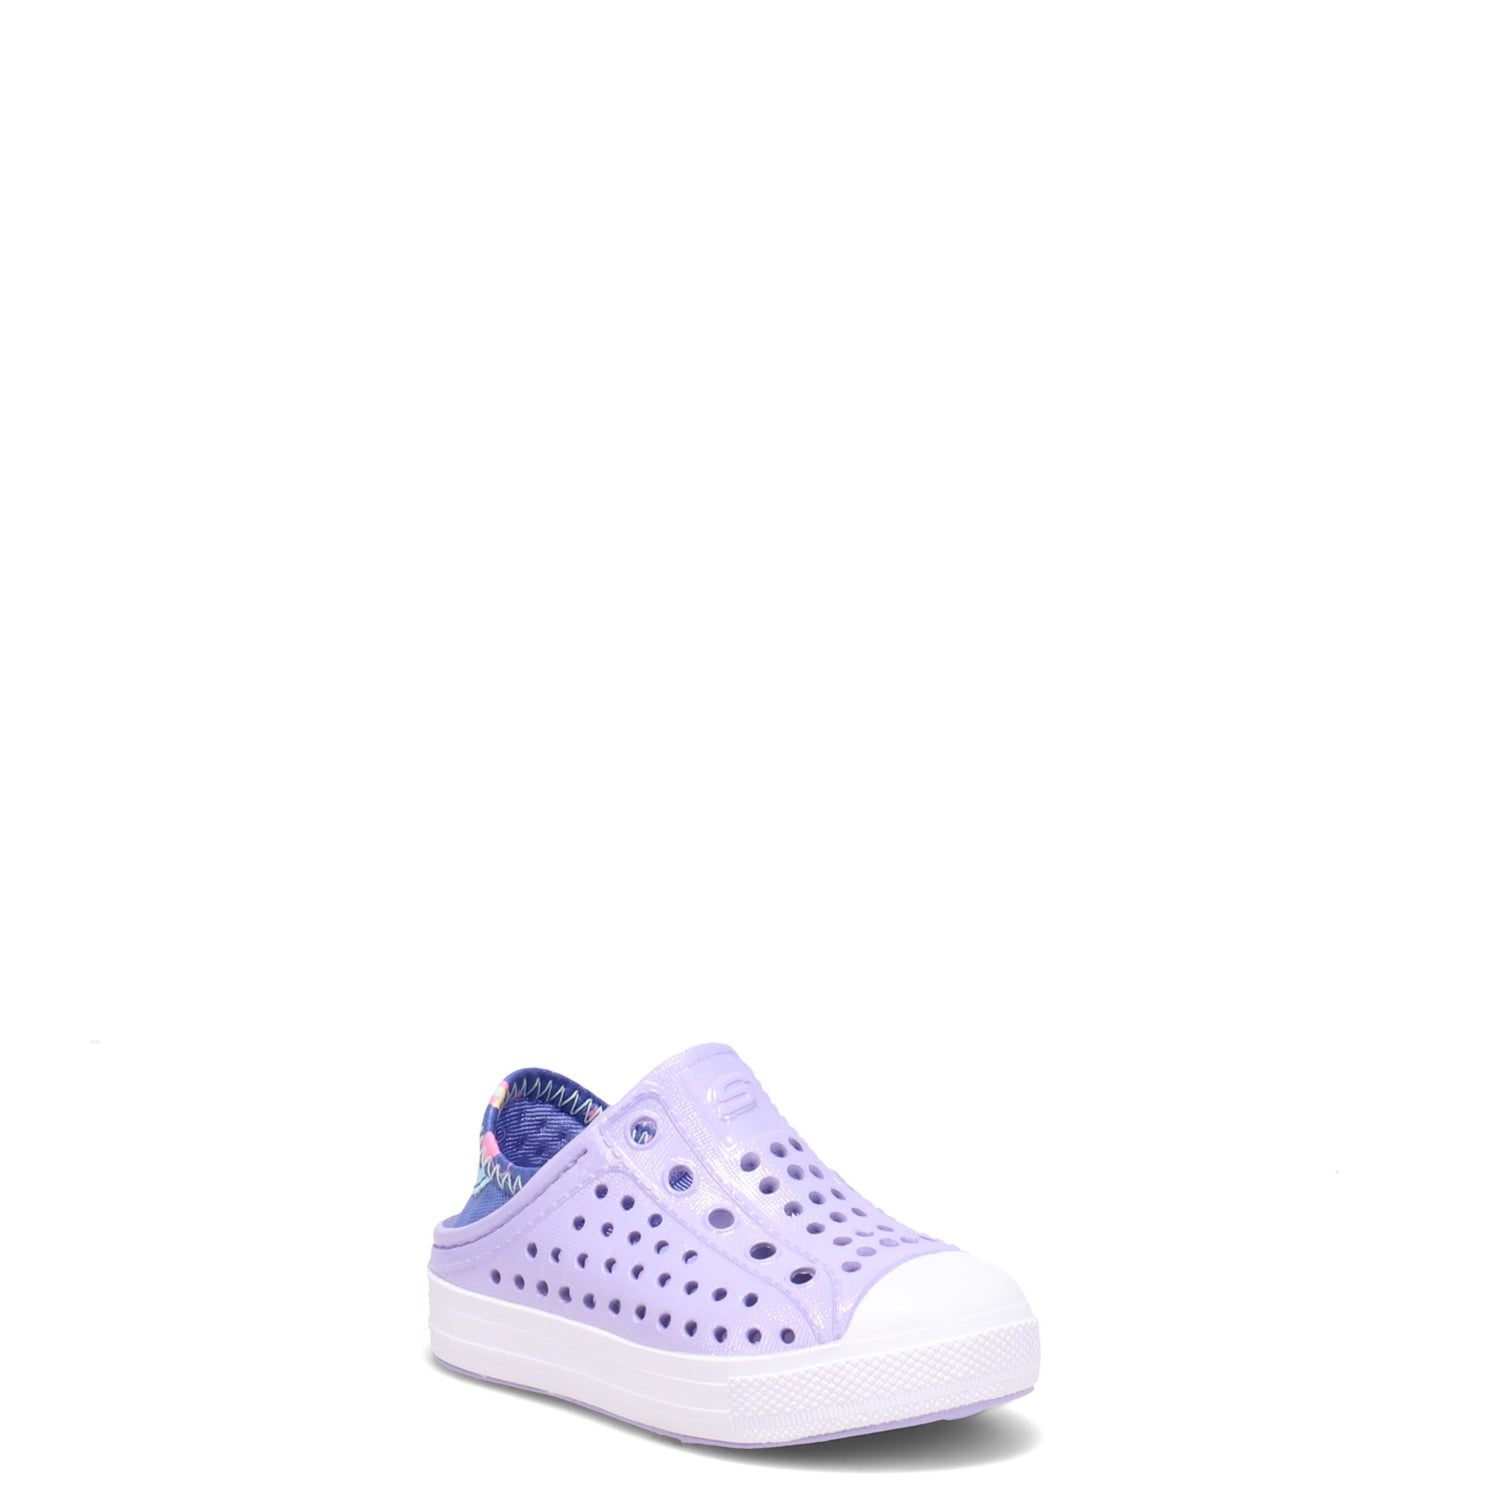 Peltz Shoes  Girl's Skechers Guzman Steps - Sandcastle Dreams Slip-On - Toddler Lavender 302063N-LAV